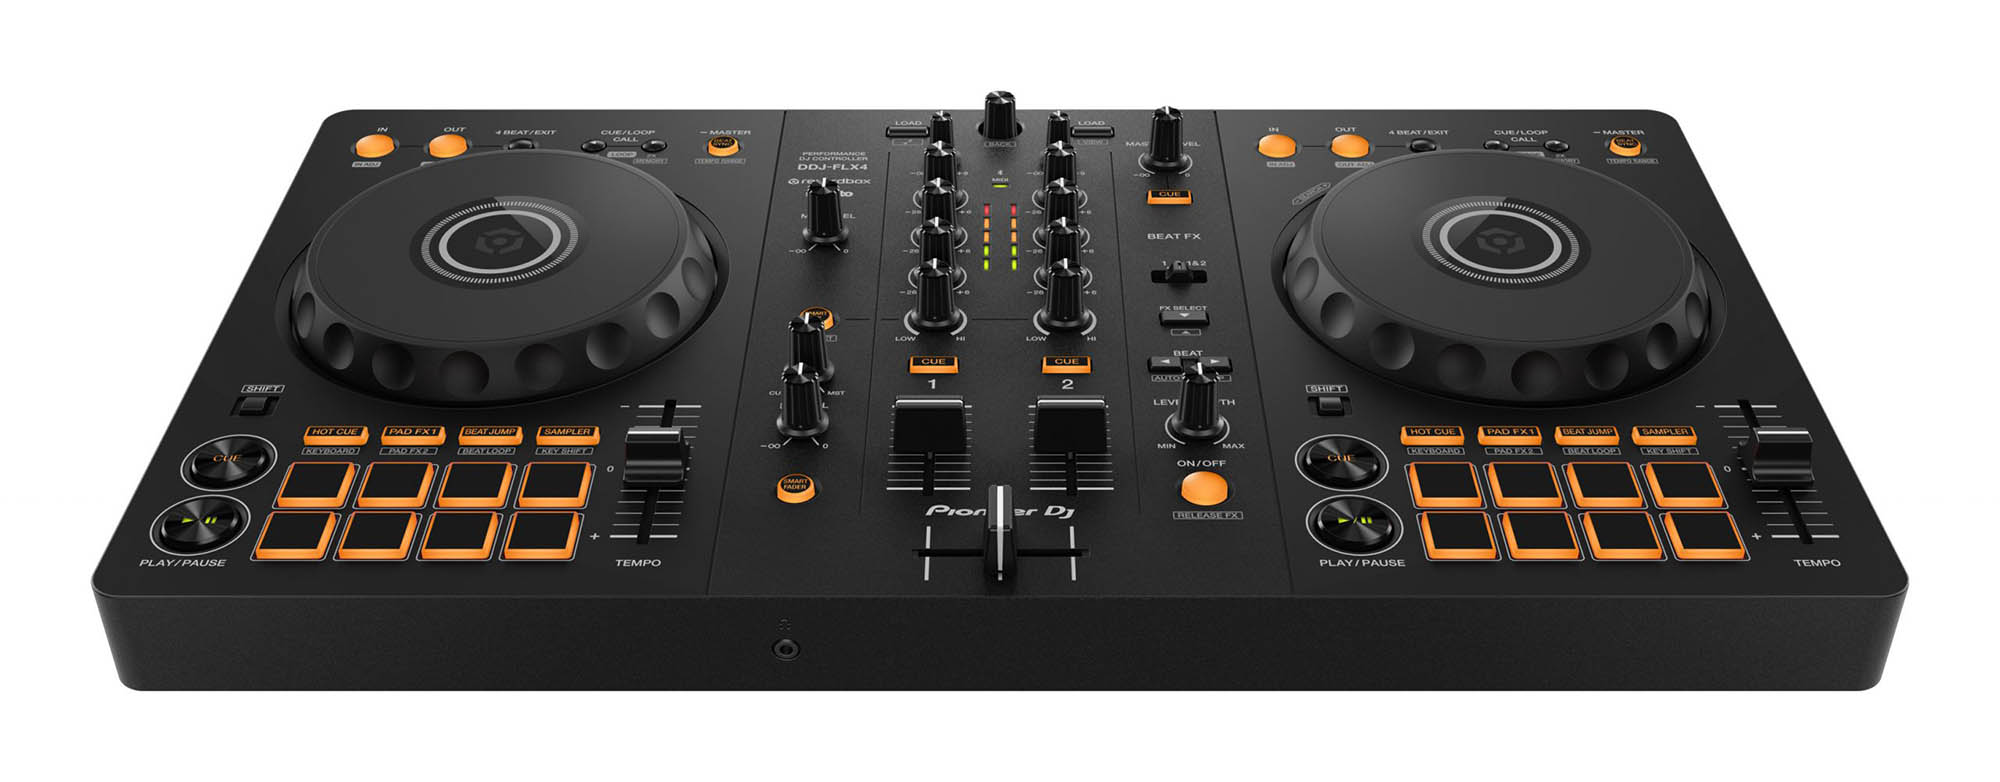 Pioneer DJ DDJ-FLX4 Rekordbox and Serato DJ controller